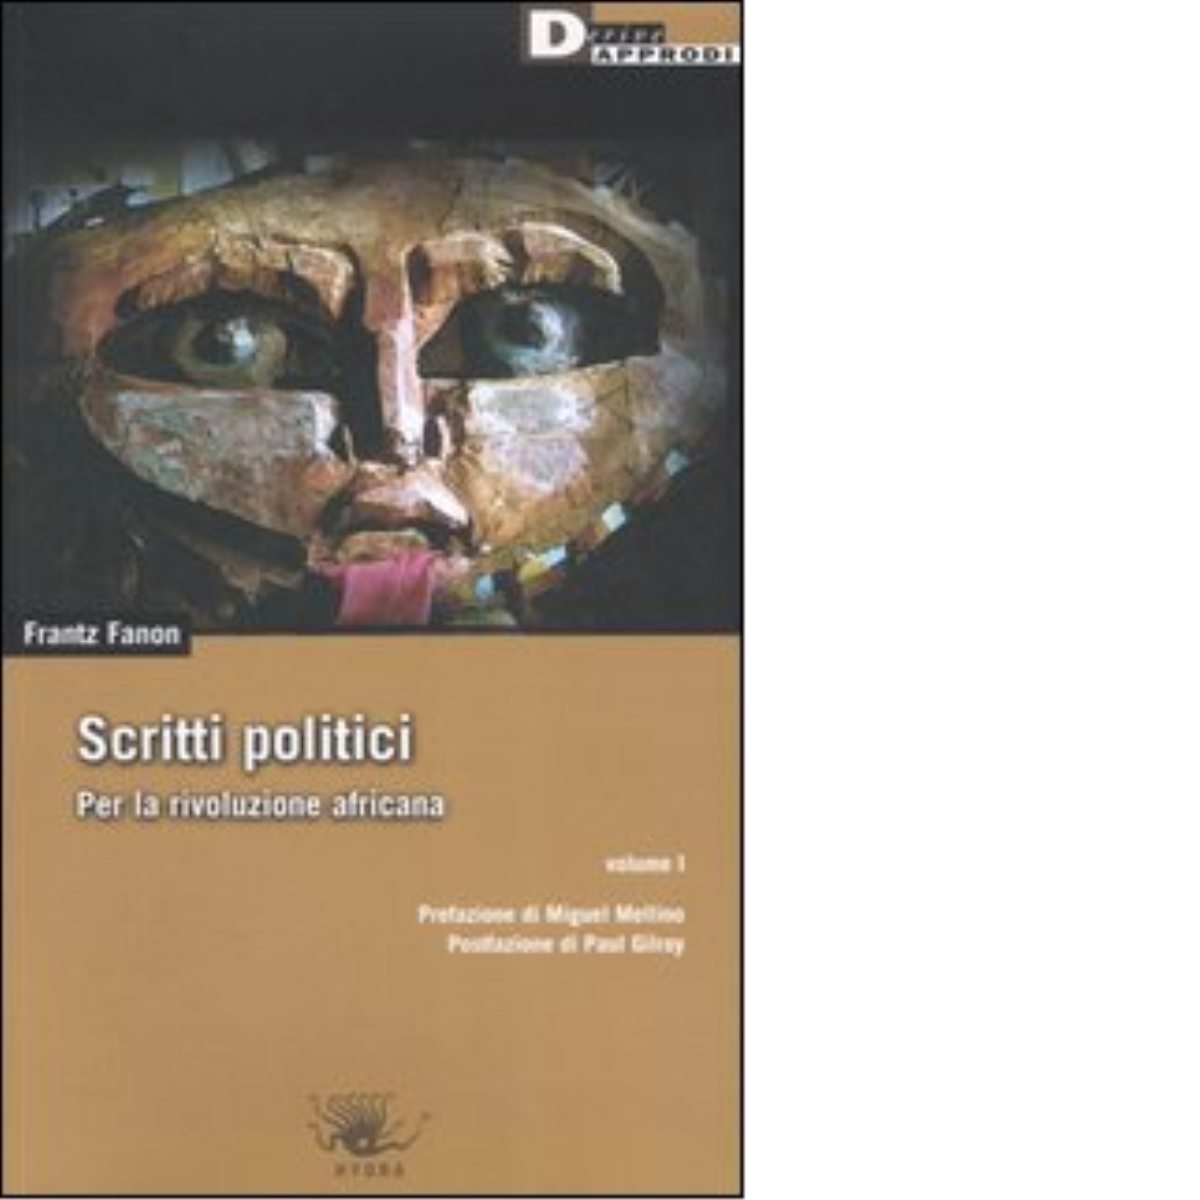 SCRITTI POLITICI. VOL. I. di FRANTZ FANON - DeriveApprodi editore, 2006